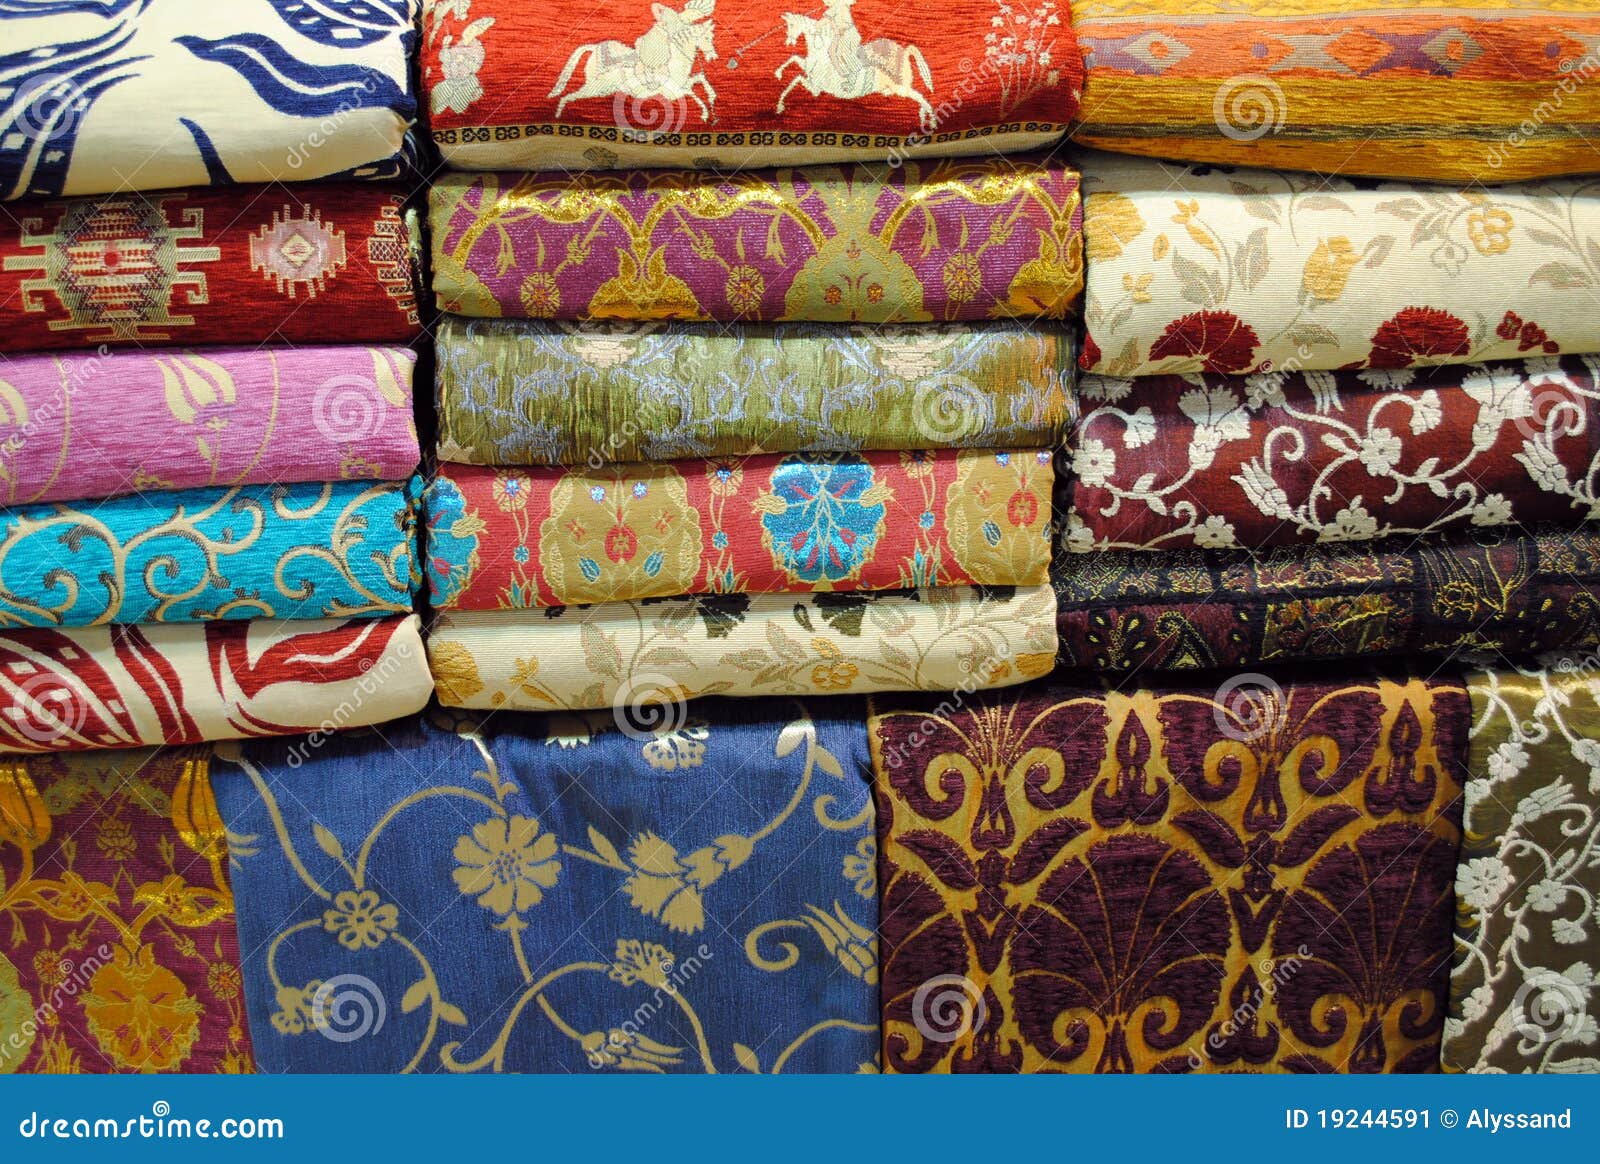 fabrics at grand bazaar